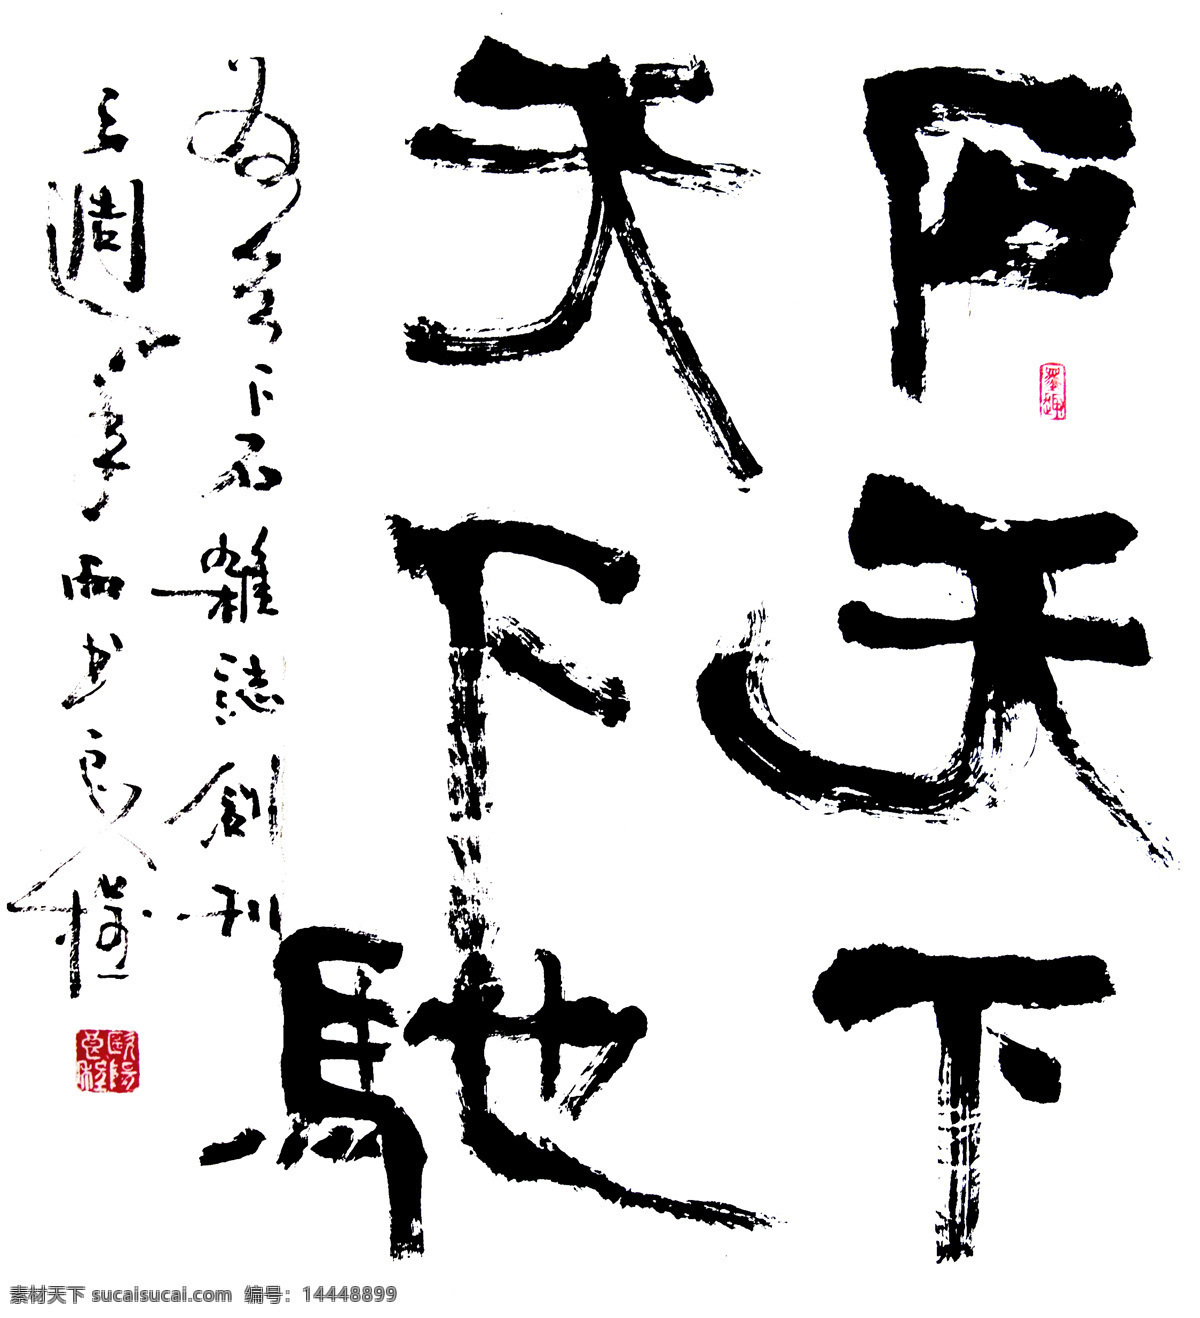 绘画书法 书法设计 书法字体 水墨素材 文化艺术 中国风 中国风素材 书法 字体 设计素材 模板下载 天下石 字体设计